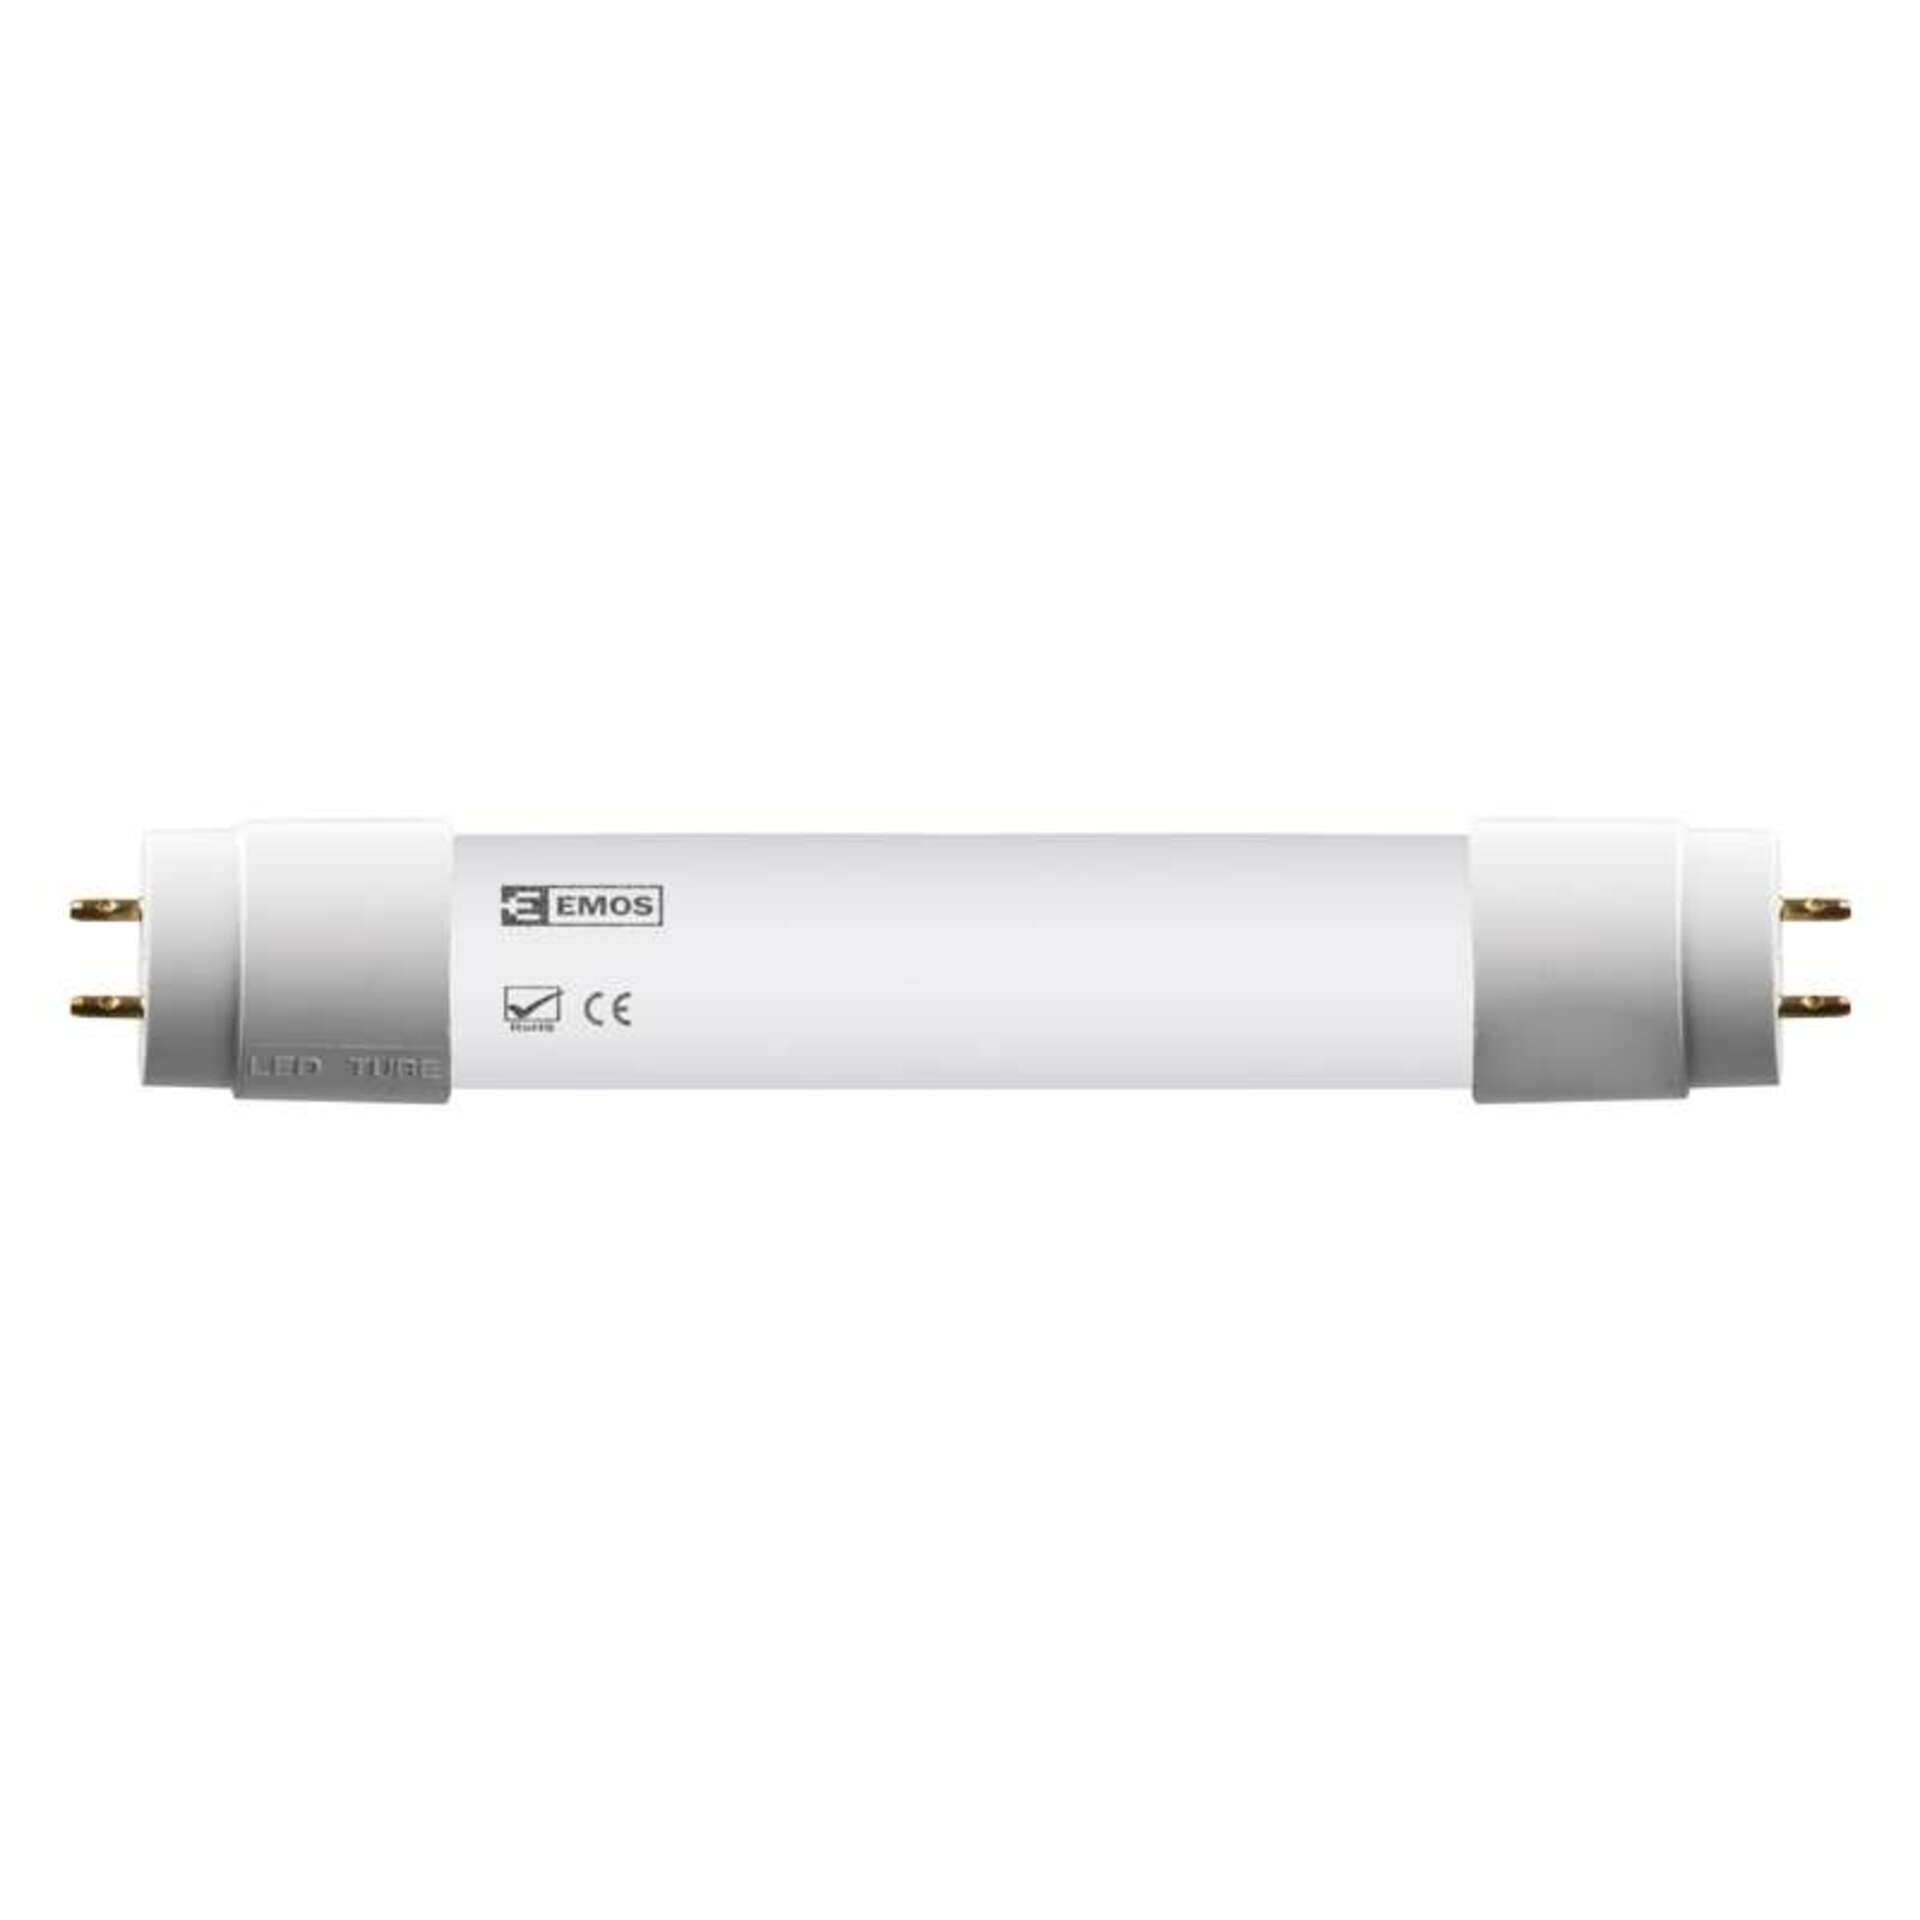 EMOS Lighting EMOS LED zářivka LINEAR T8 18W 120cm studená bílá Z73122 1535122000